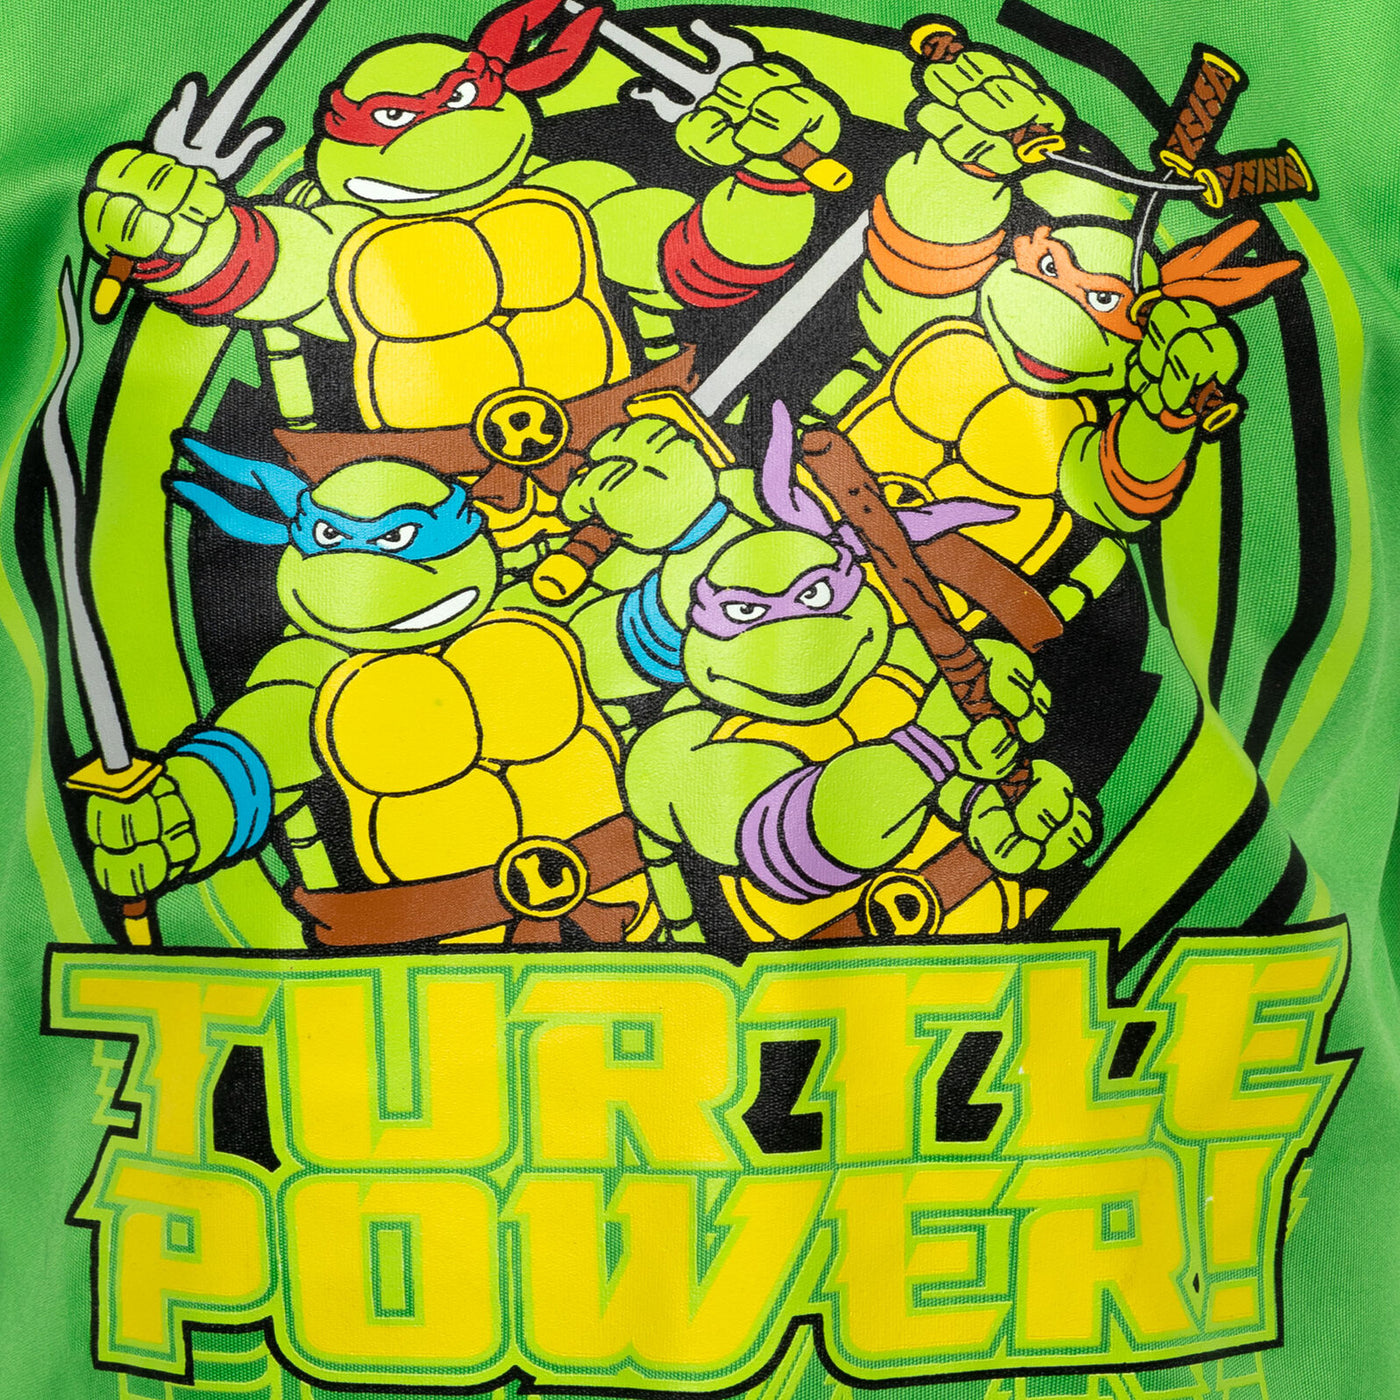 Paquete de 3 Tortugas Ninja Mutantes Adolescentes Camisetas gráficas